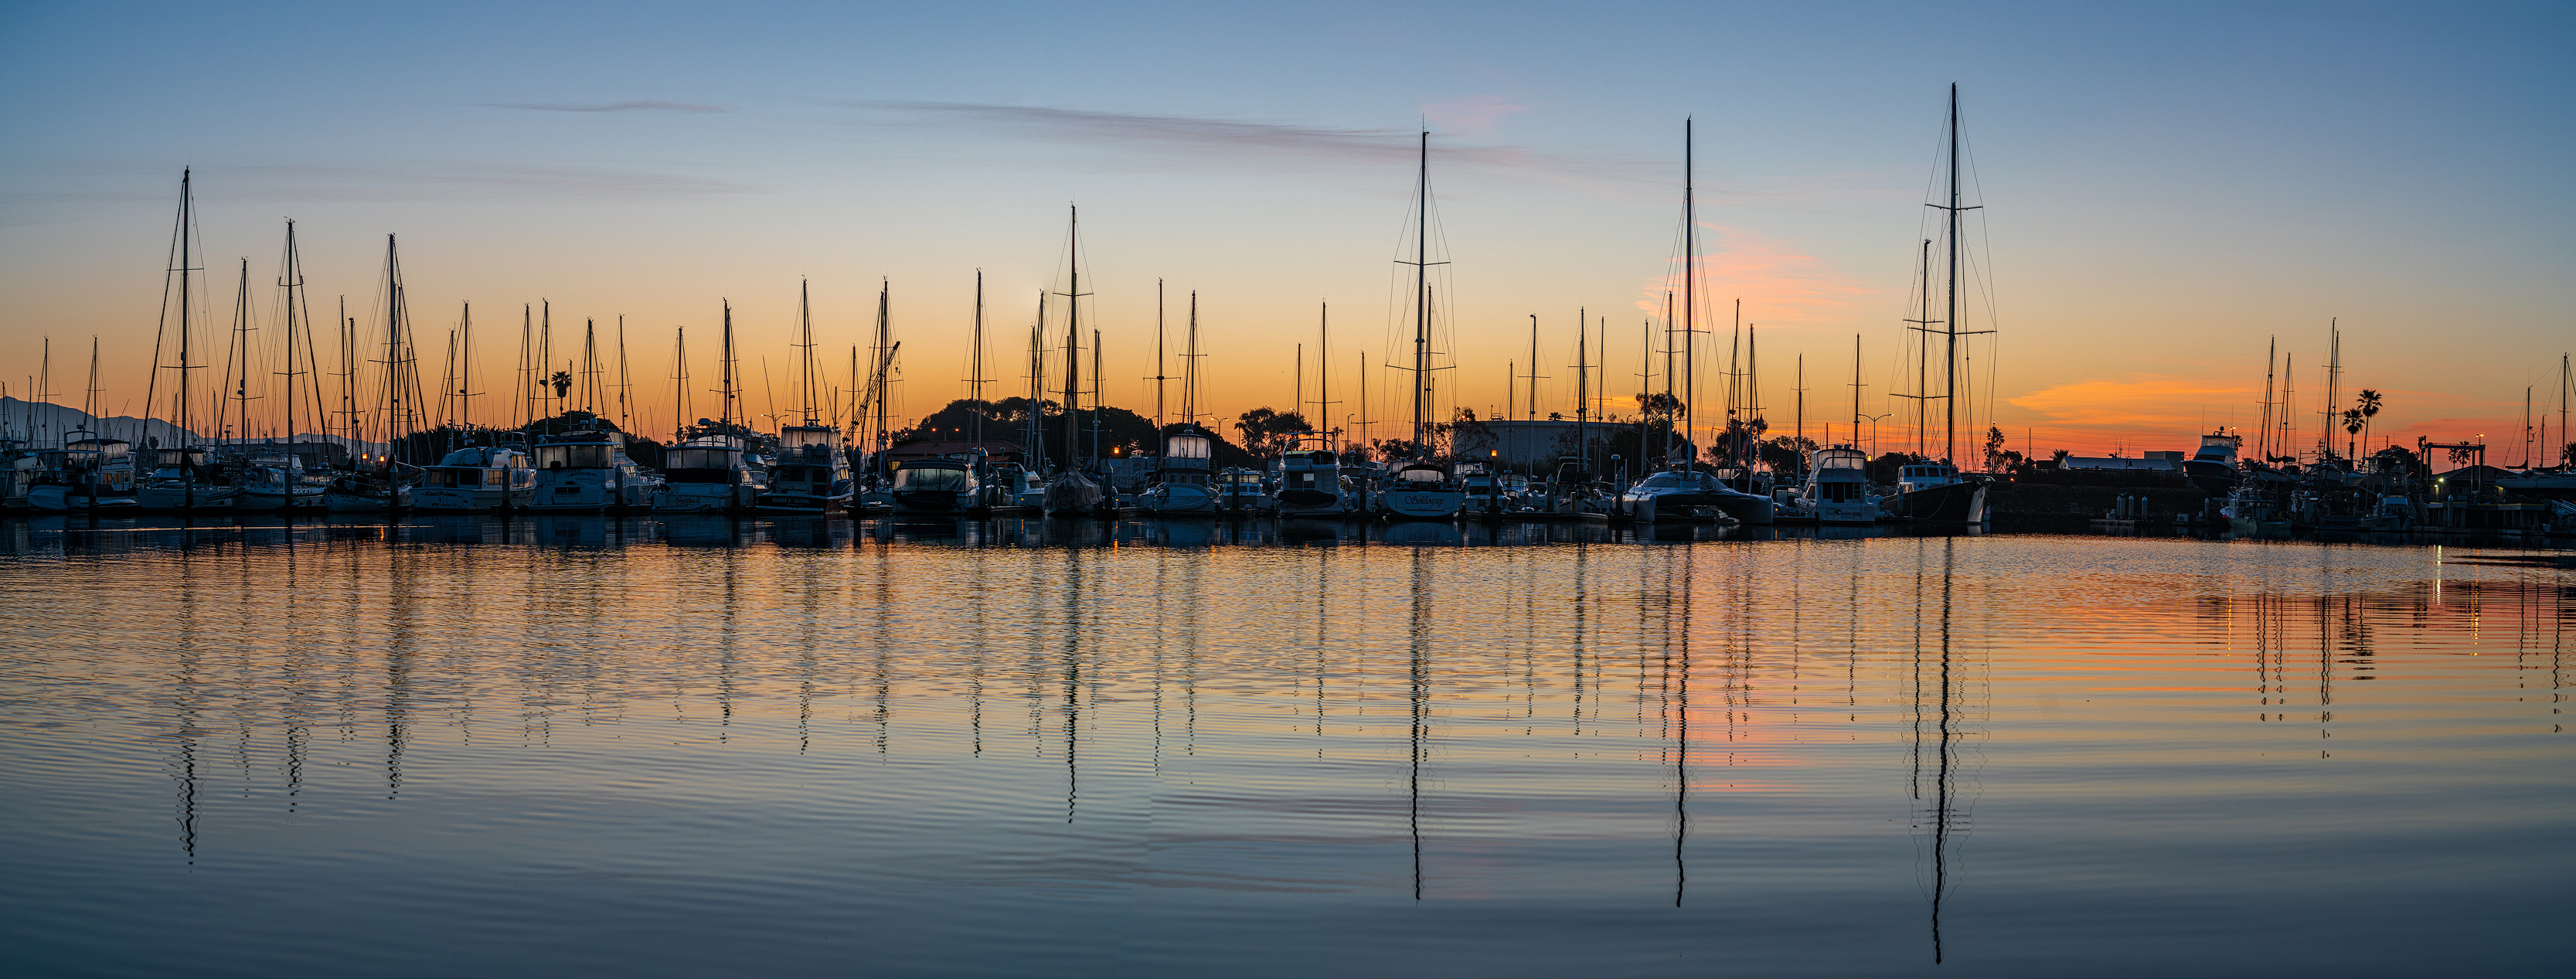 Sunrise In Ventura Harbor